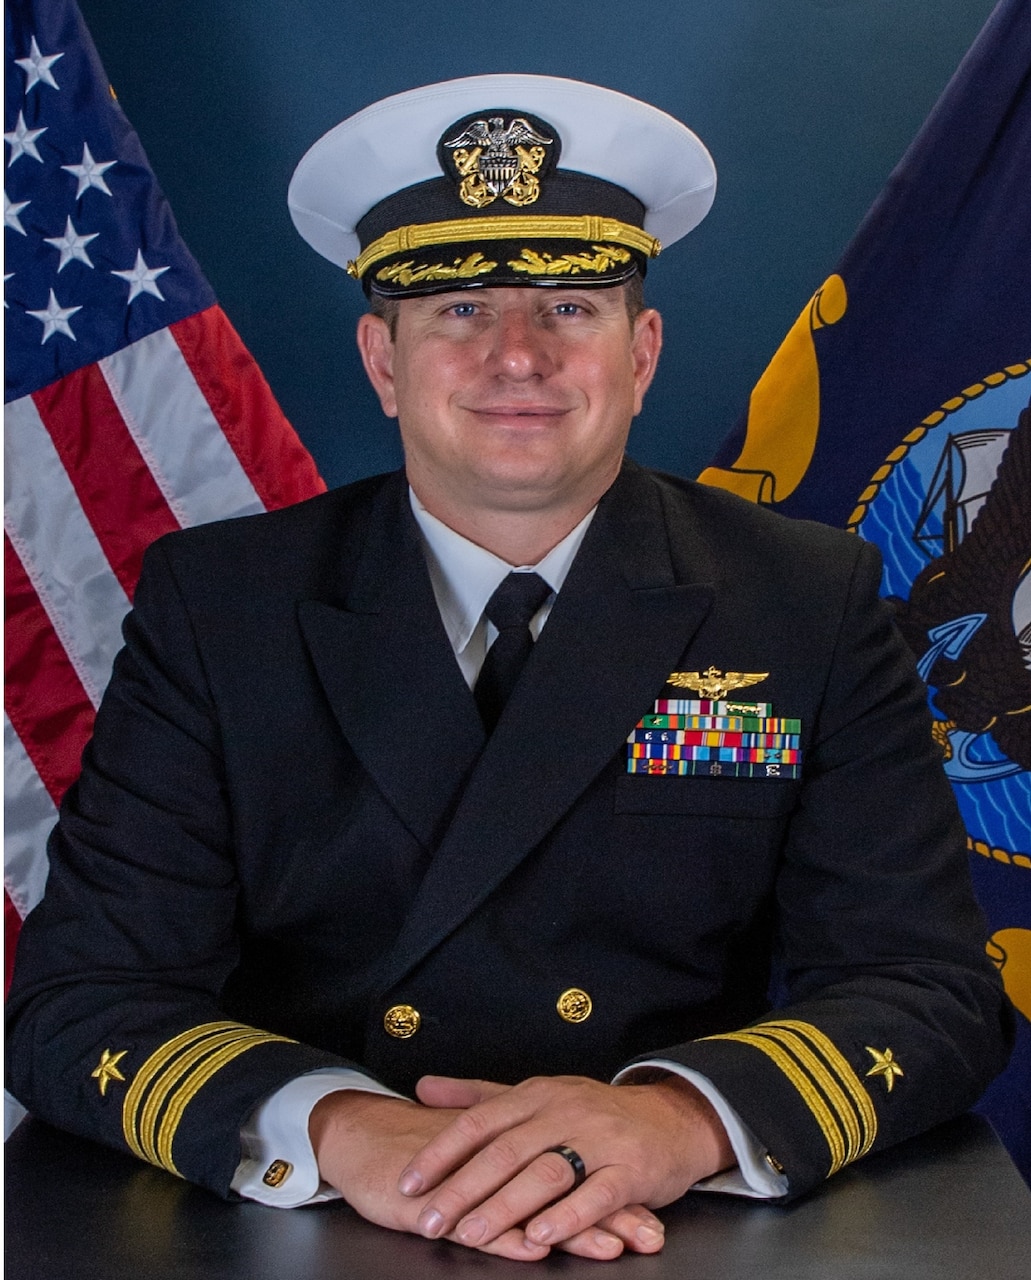 Commander David A. Hoopengardner